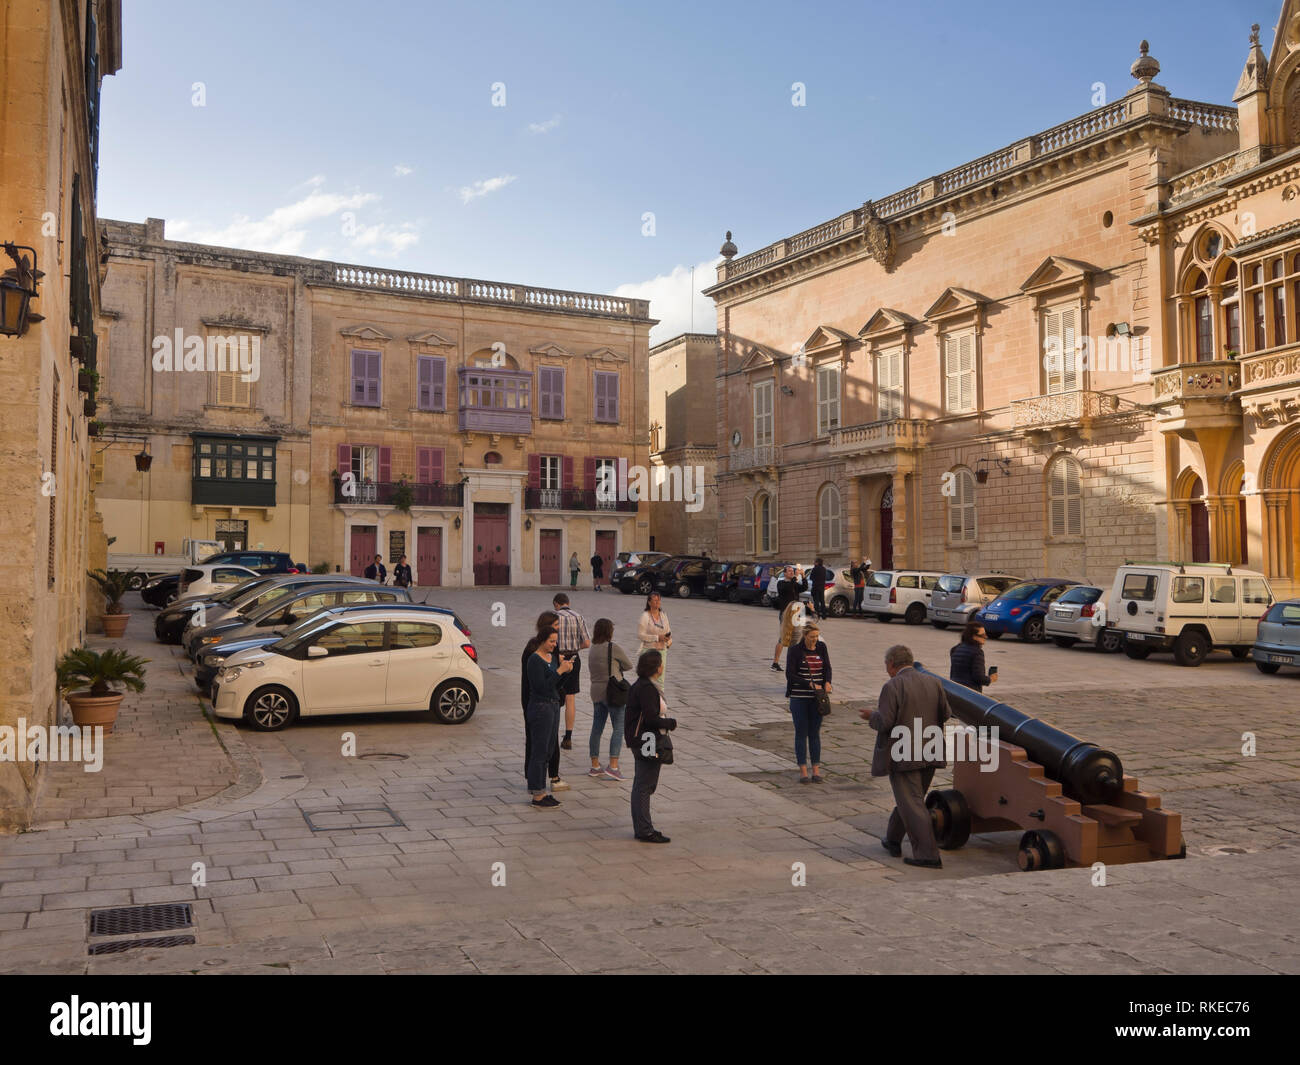 Los edificios alrededor de la plaza de San Pablo en la ciudad amurallada de Mdina, la antigua capital de Malta Foto de stock